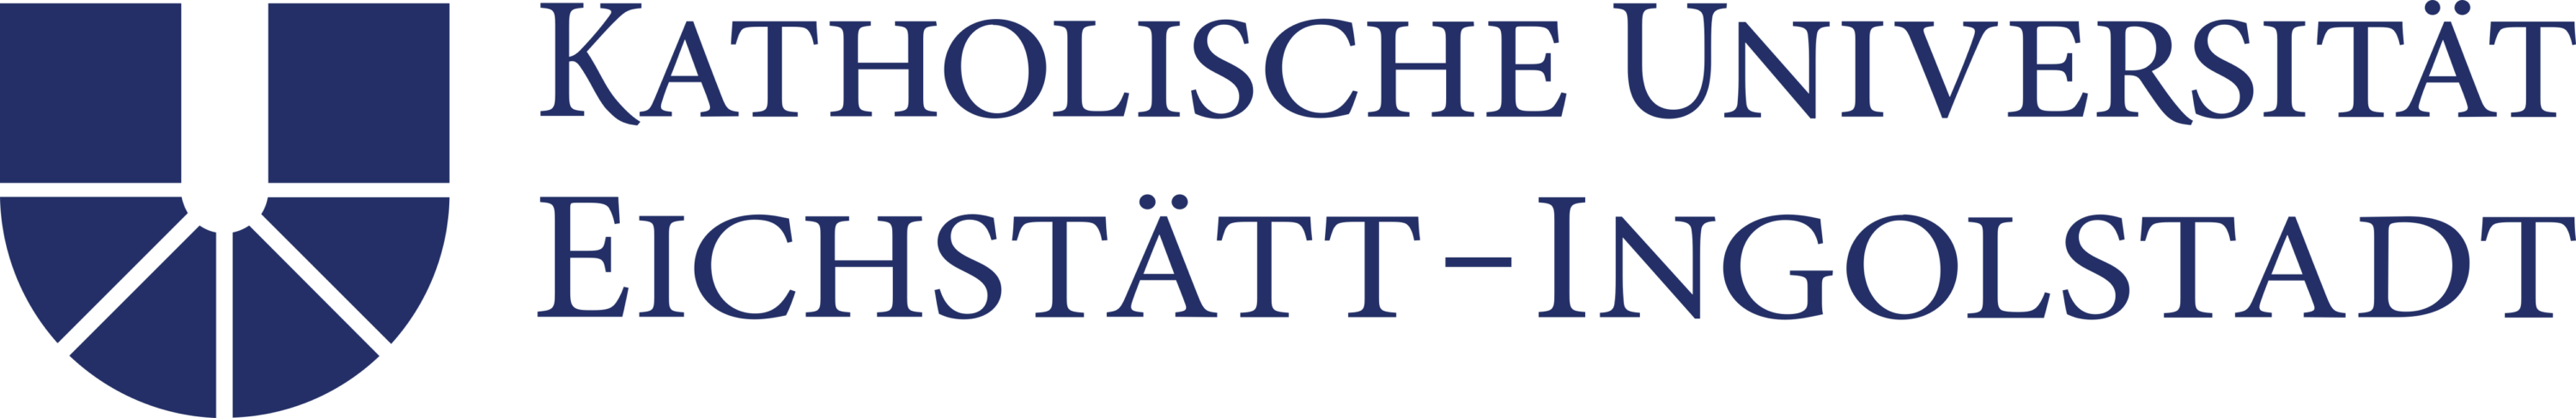 Katholische Universität Eichstätt Ingolstadt Logo